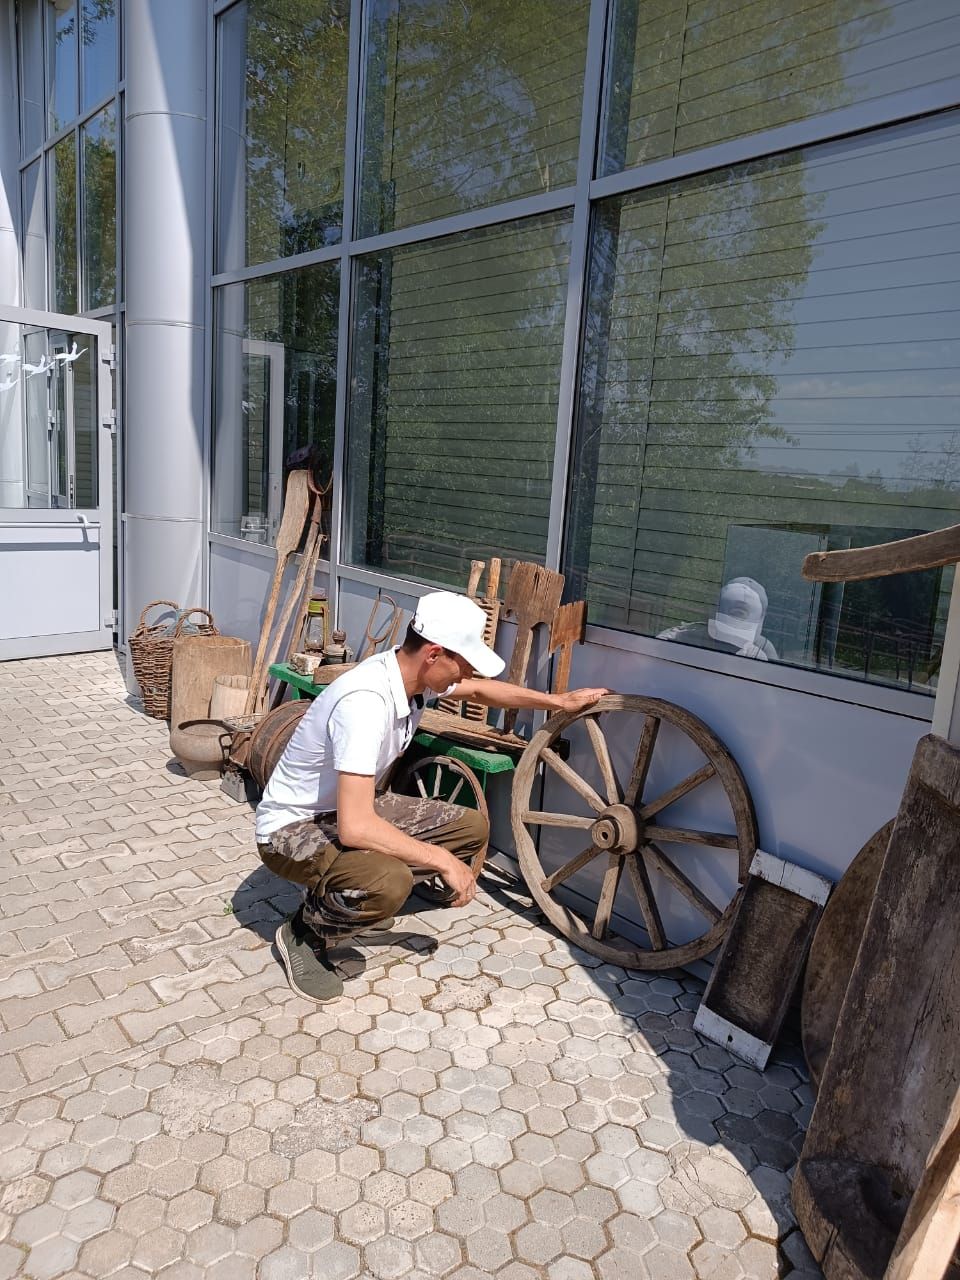 Миннур Шәмсетдинов Чыты авылында ачык һавадагы музей оештырган